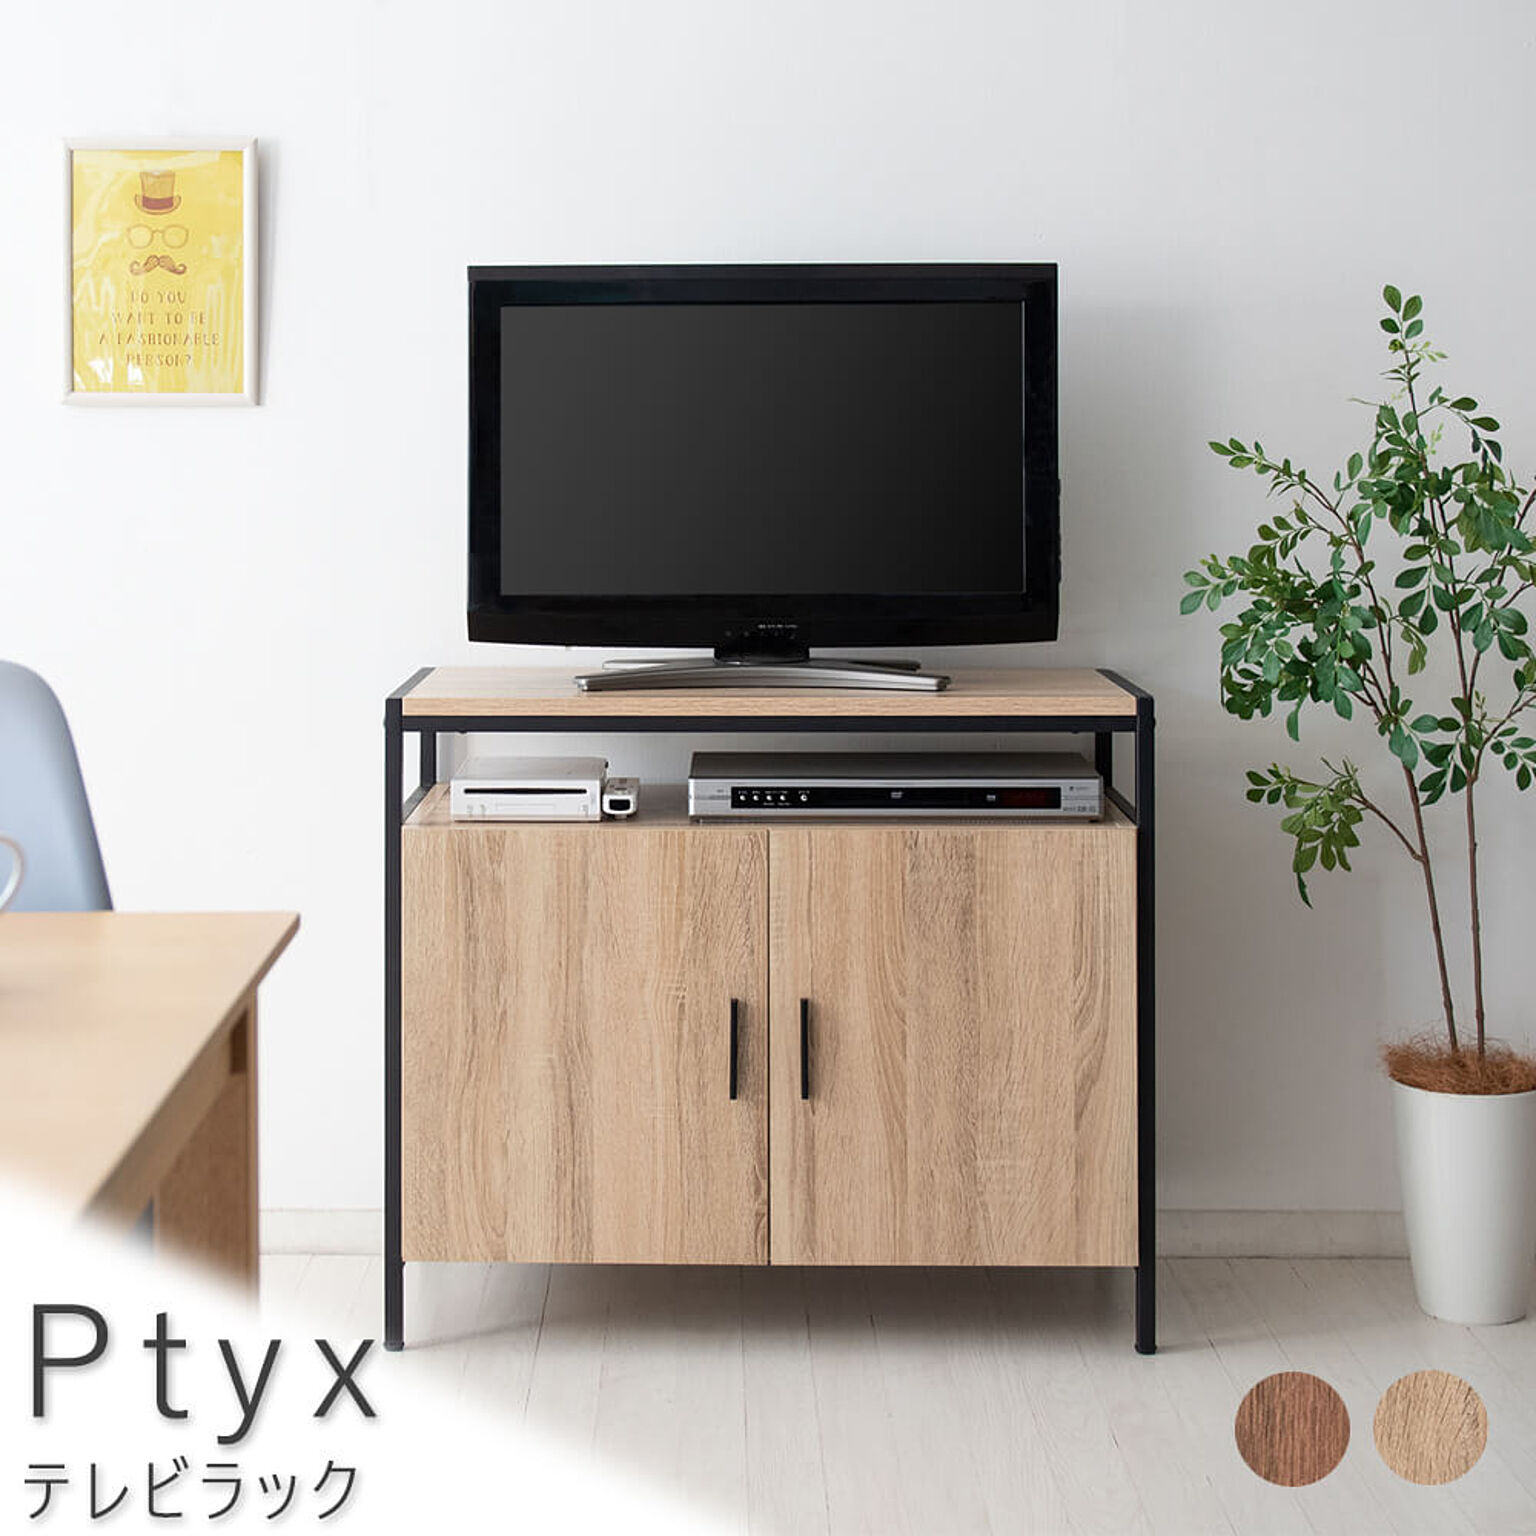 Ptyx（プティクス） テレビラック m10685